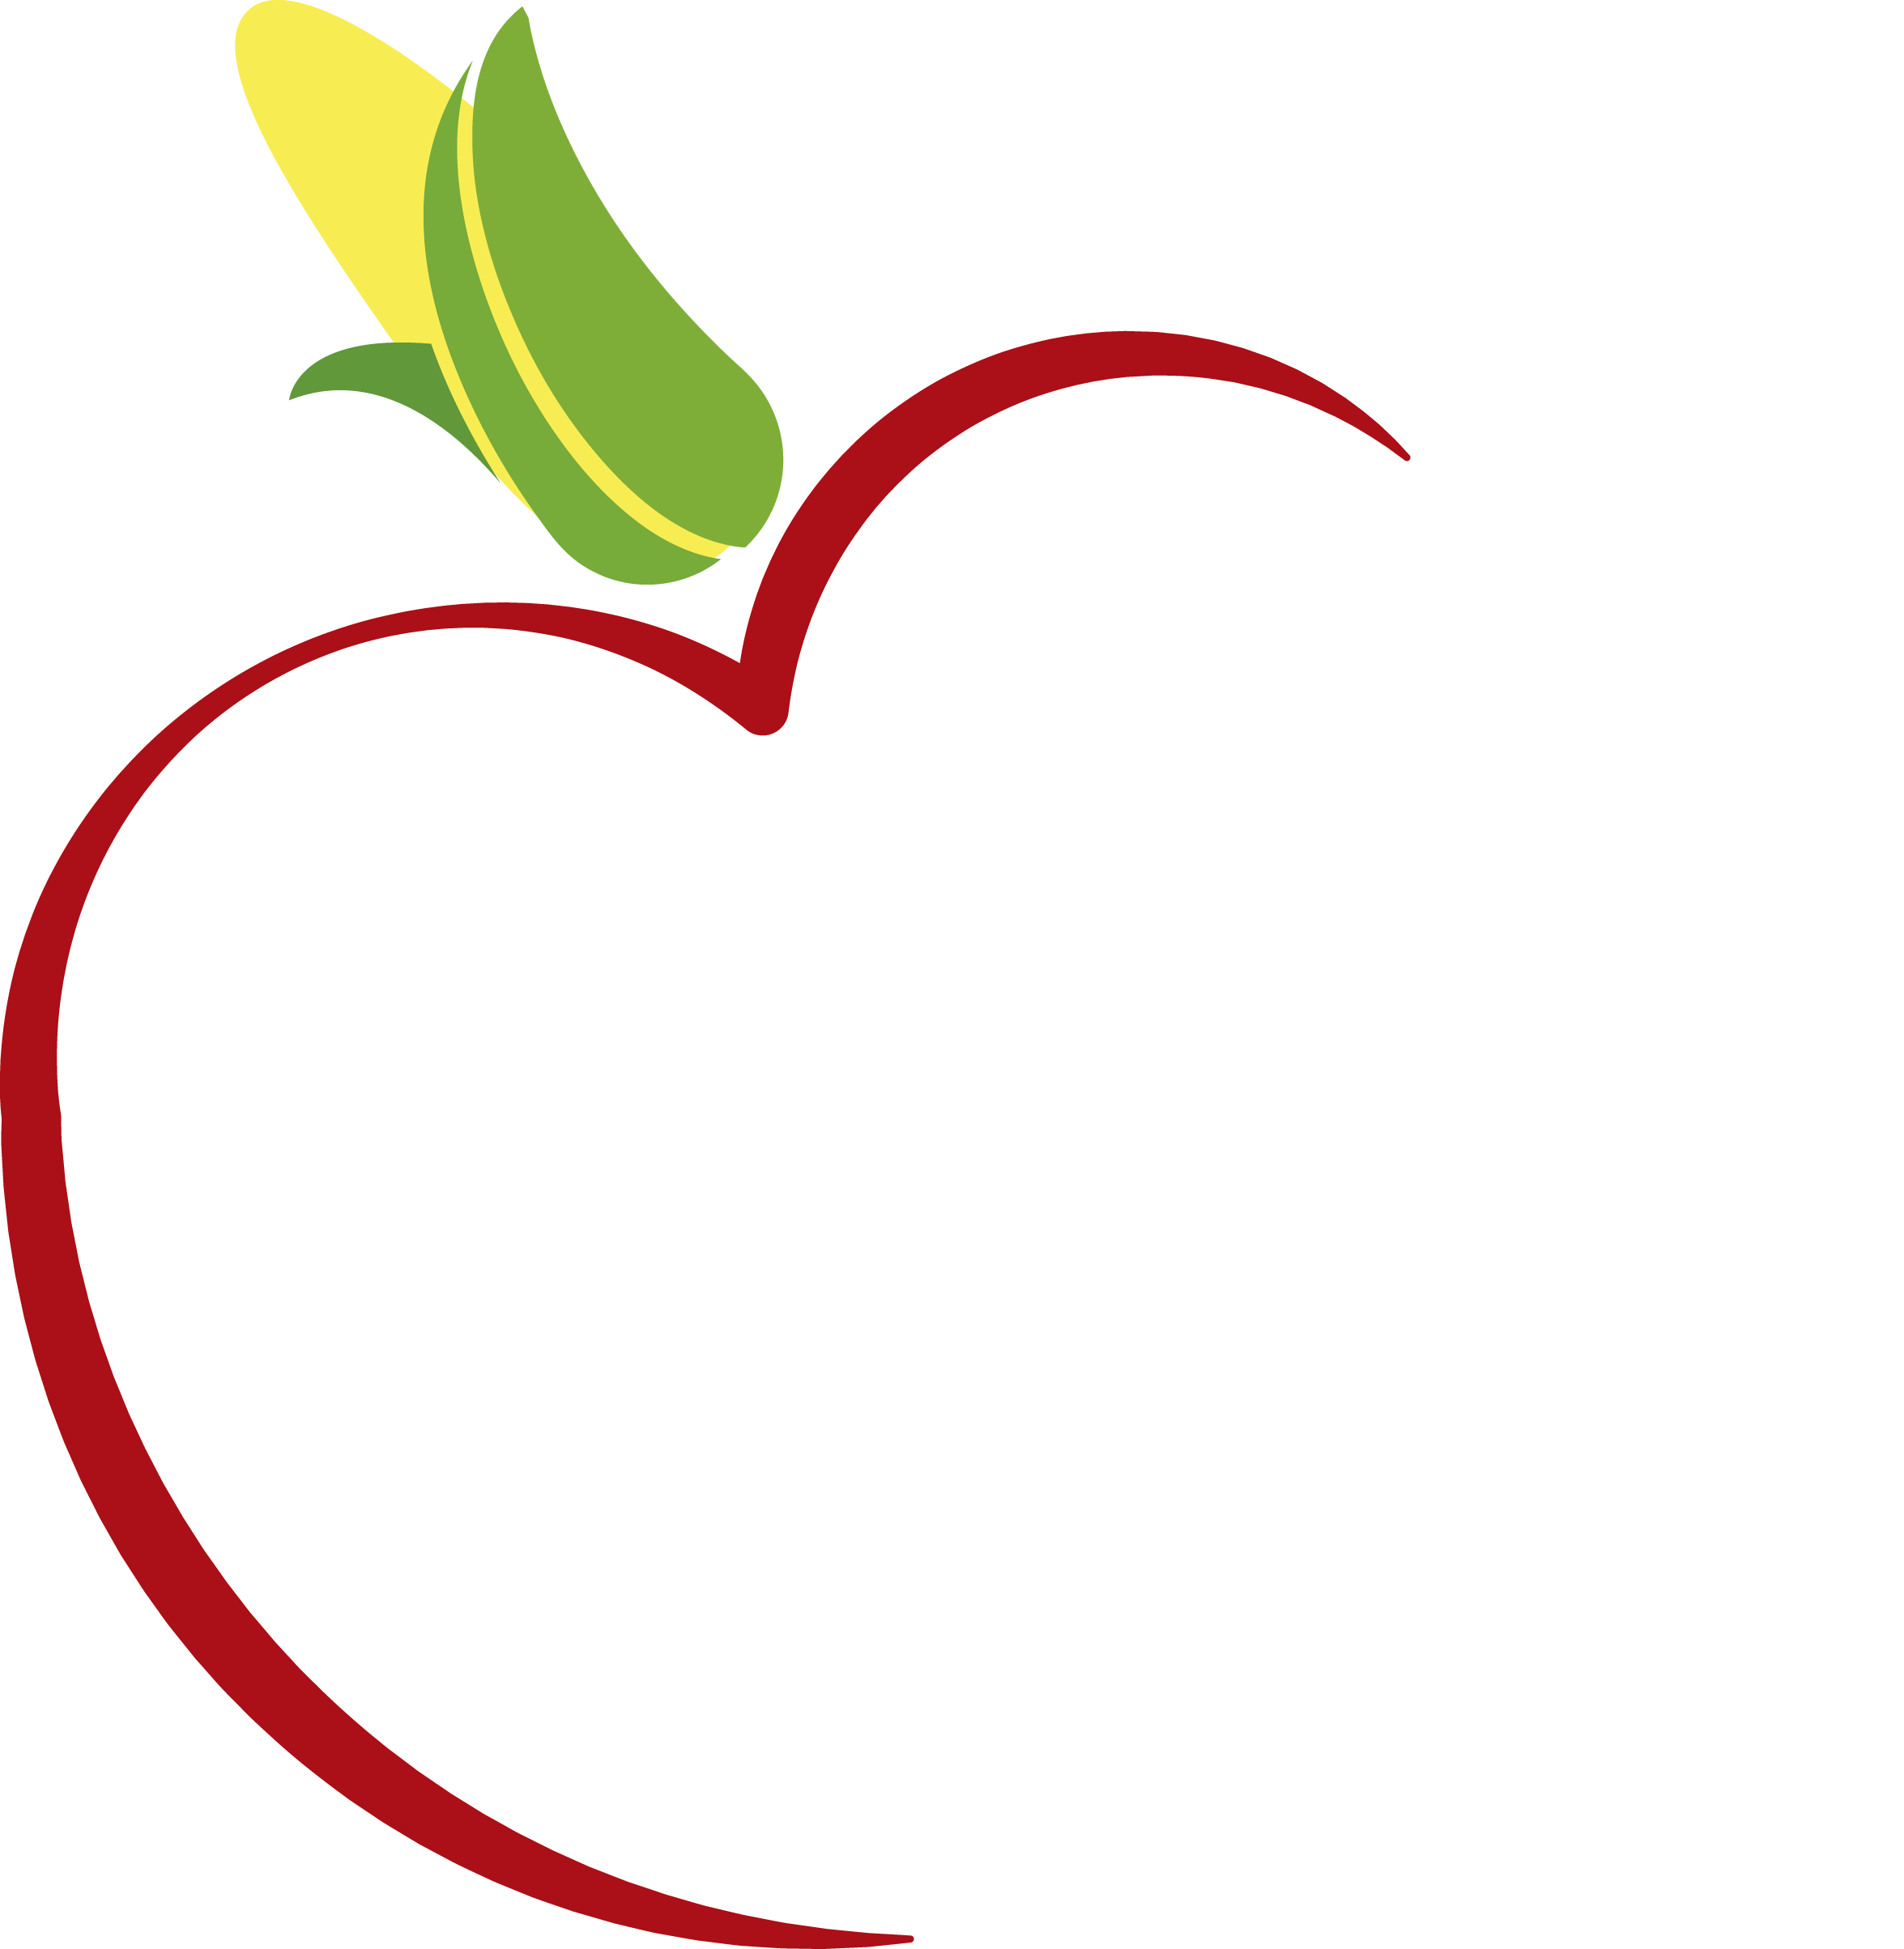 Facultad de Nutrición